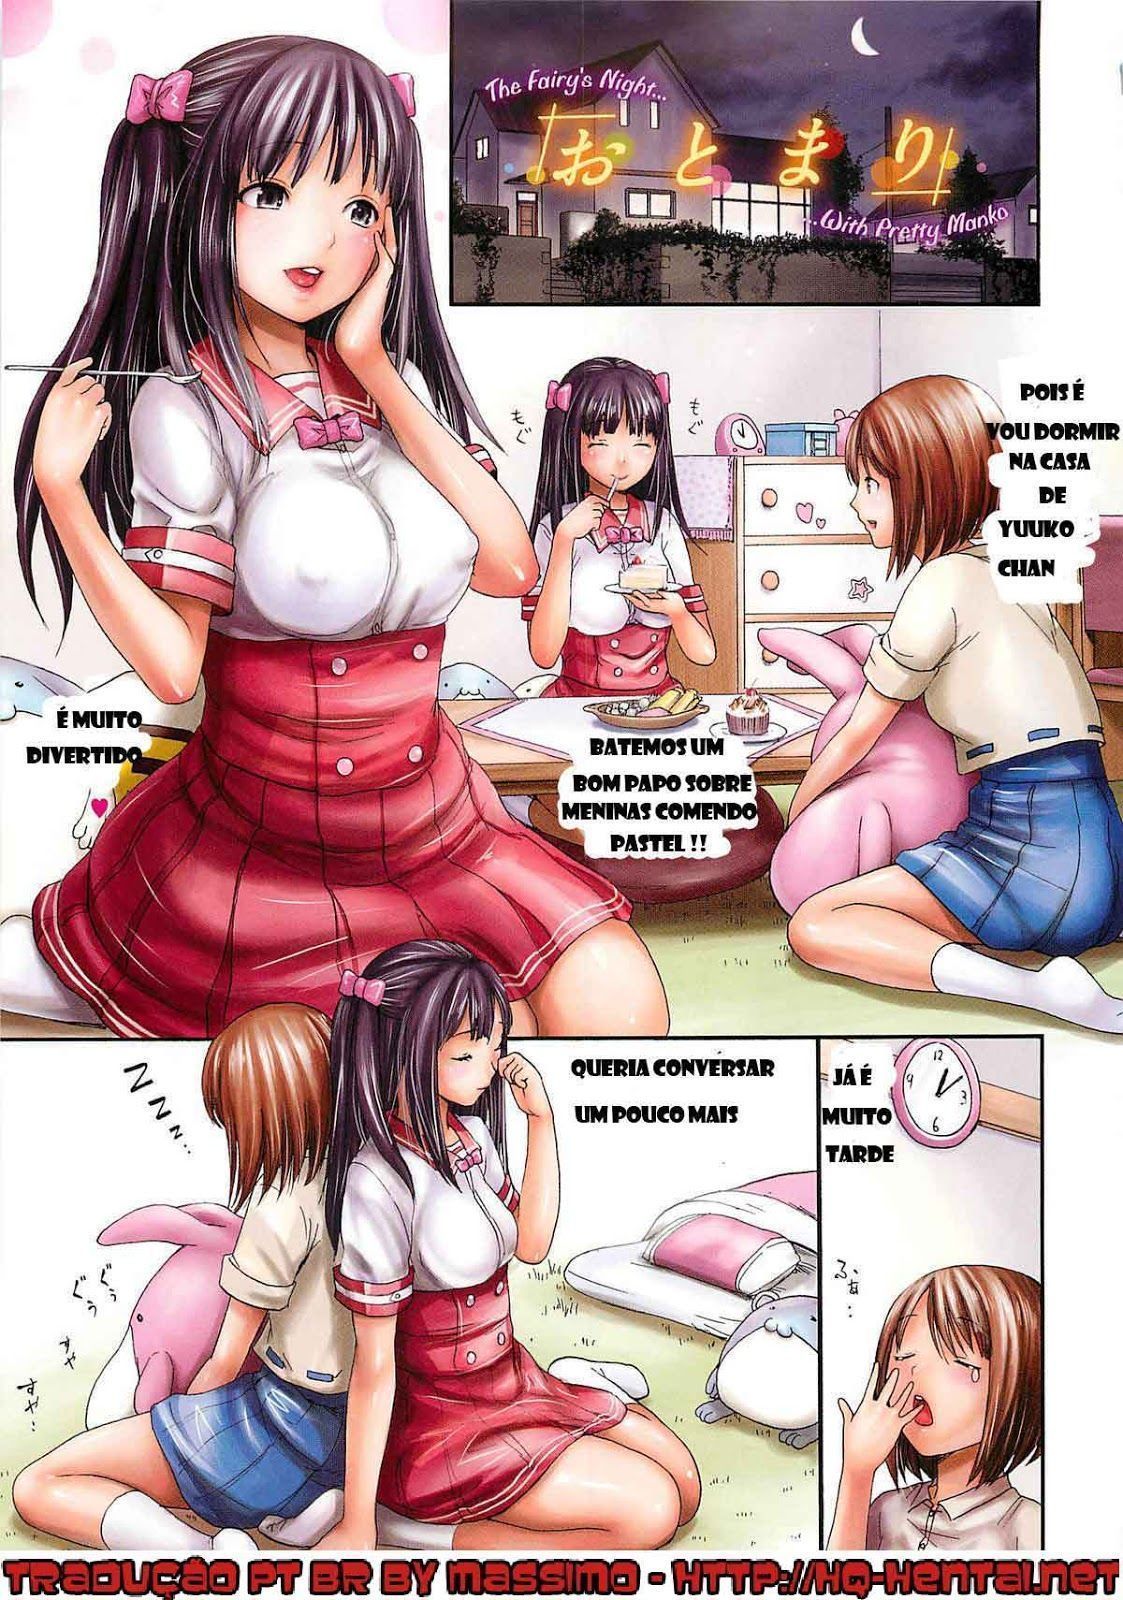 Hentai - Amigas de Classe - Quadrinhos Porno